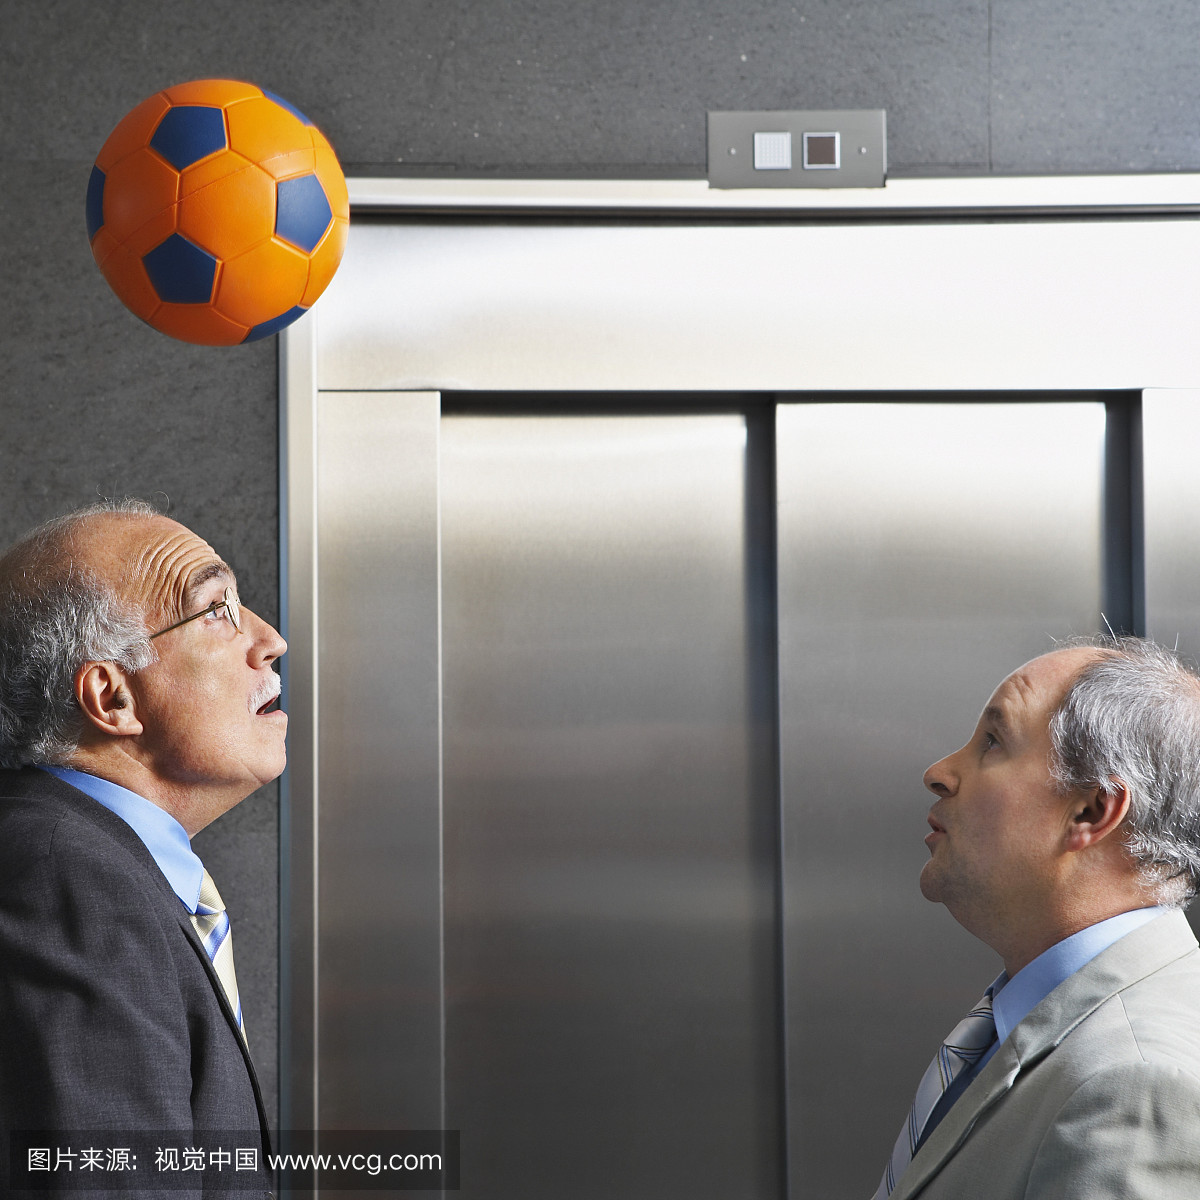 商人用电梯打足球